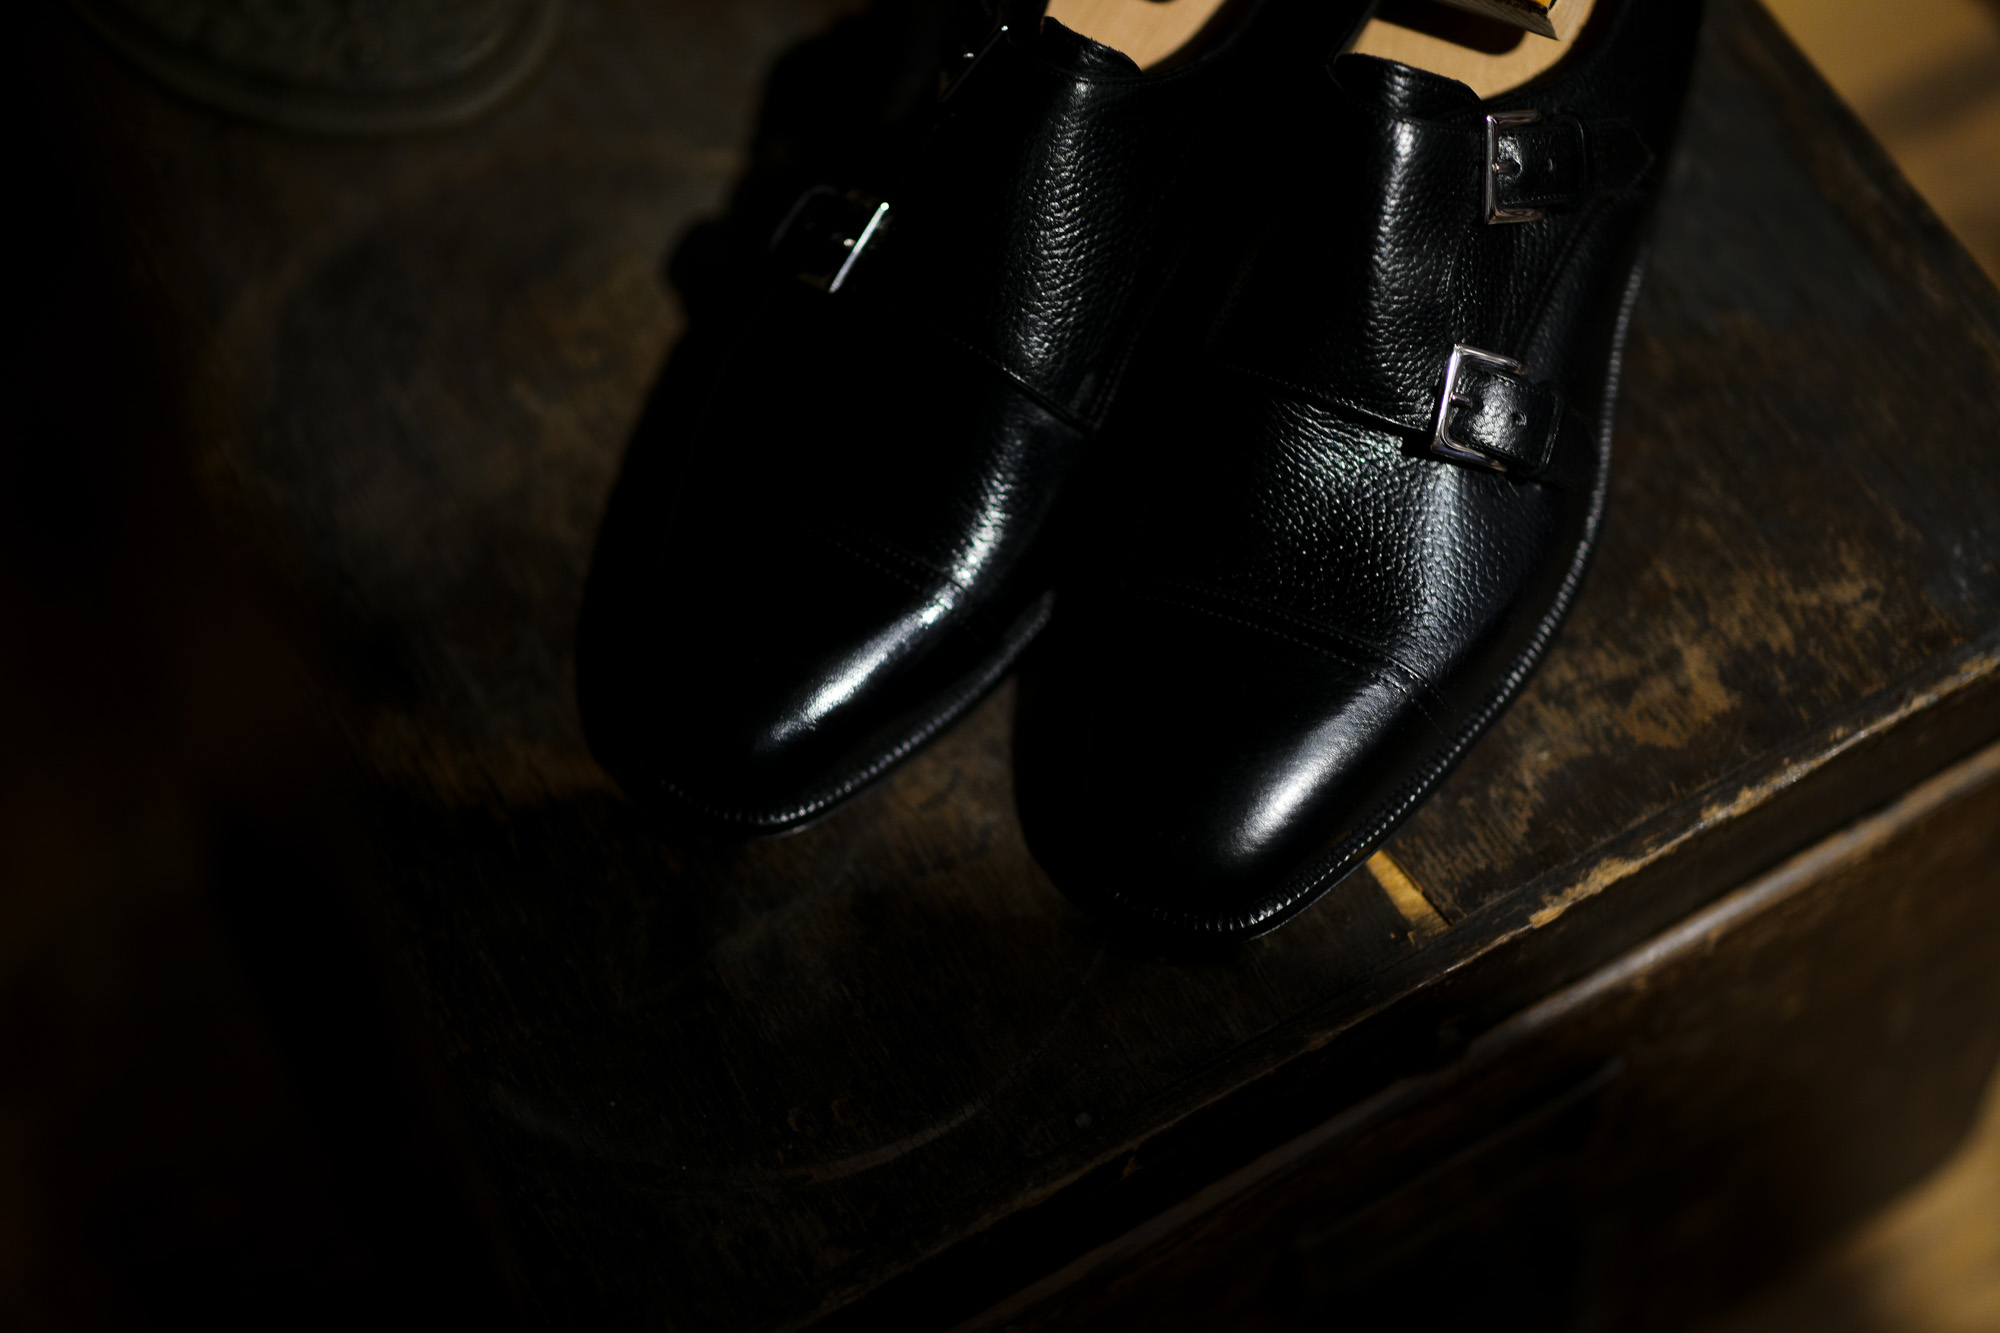 ENZO BONAFE (エンツォボナフェ) ART.EB-02 Double Monk Strap Shoes INCA Leather ダブルモンクストラップシューズ NERO (ブラック) made in italy (イタリア製) 2020 愛知 名古屋 Alto e Diritto アルトエデリット ドレスシューズ